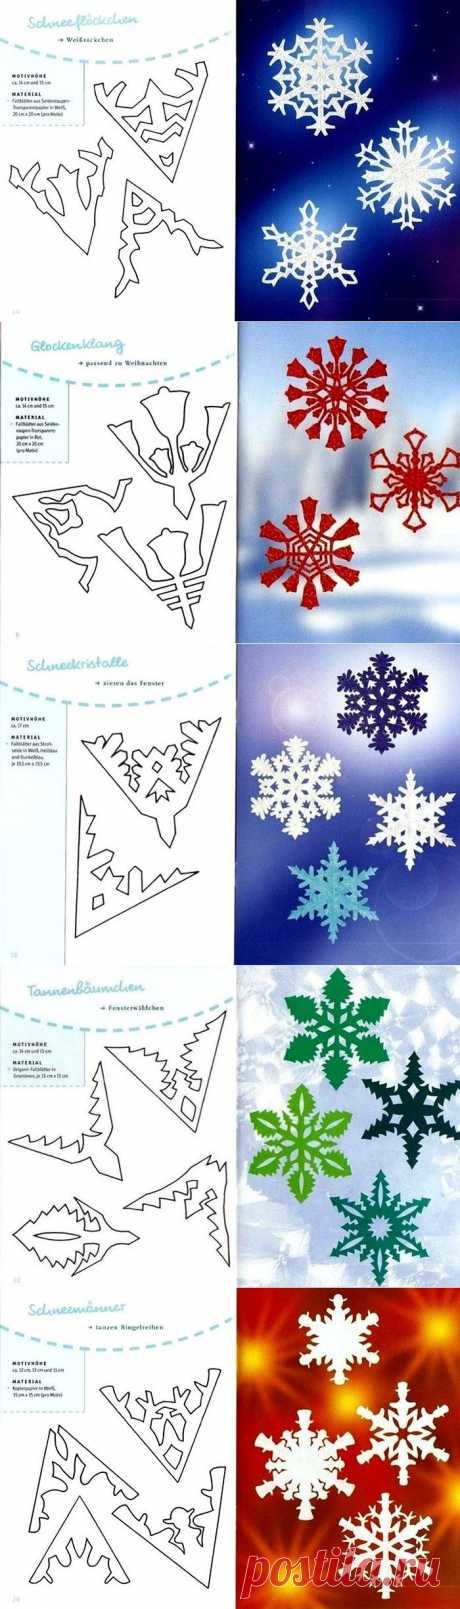 Как сделать снежинку из бумаги своими руками - схемы, фото, видео. Как вырезать снежинки из бумаги - объемную и красивую